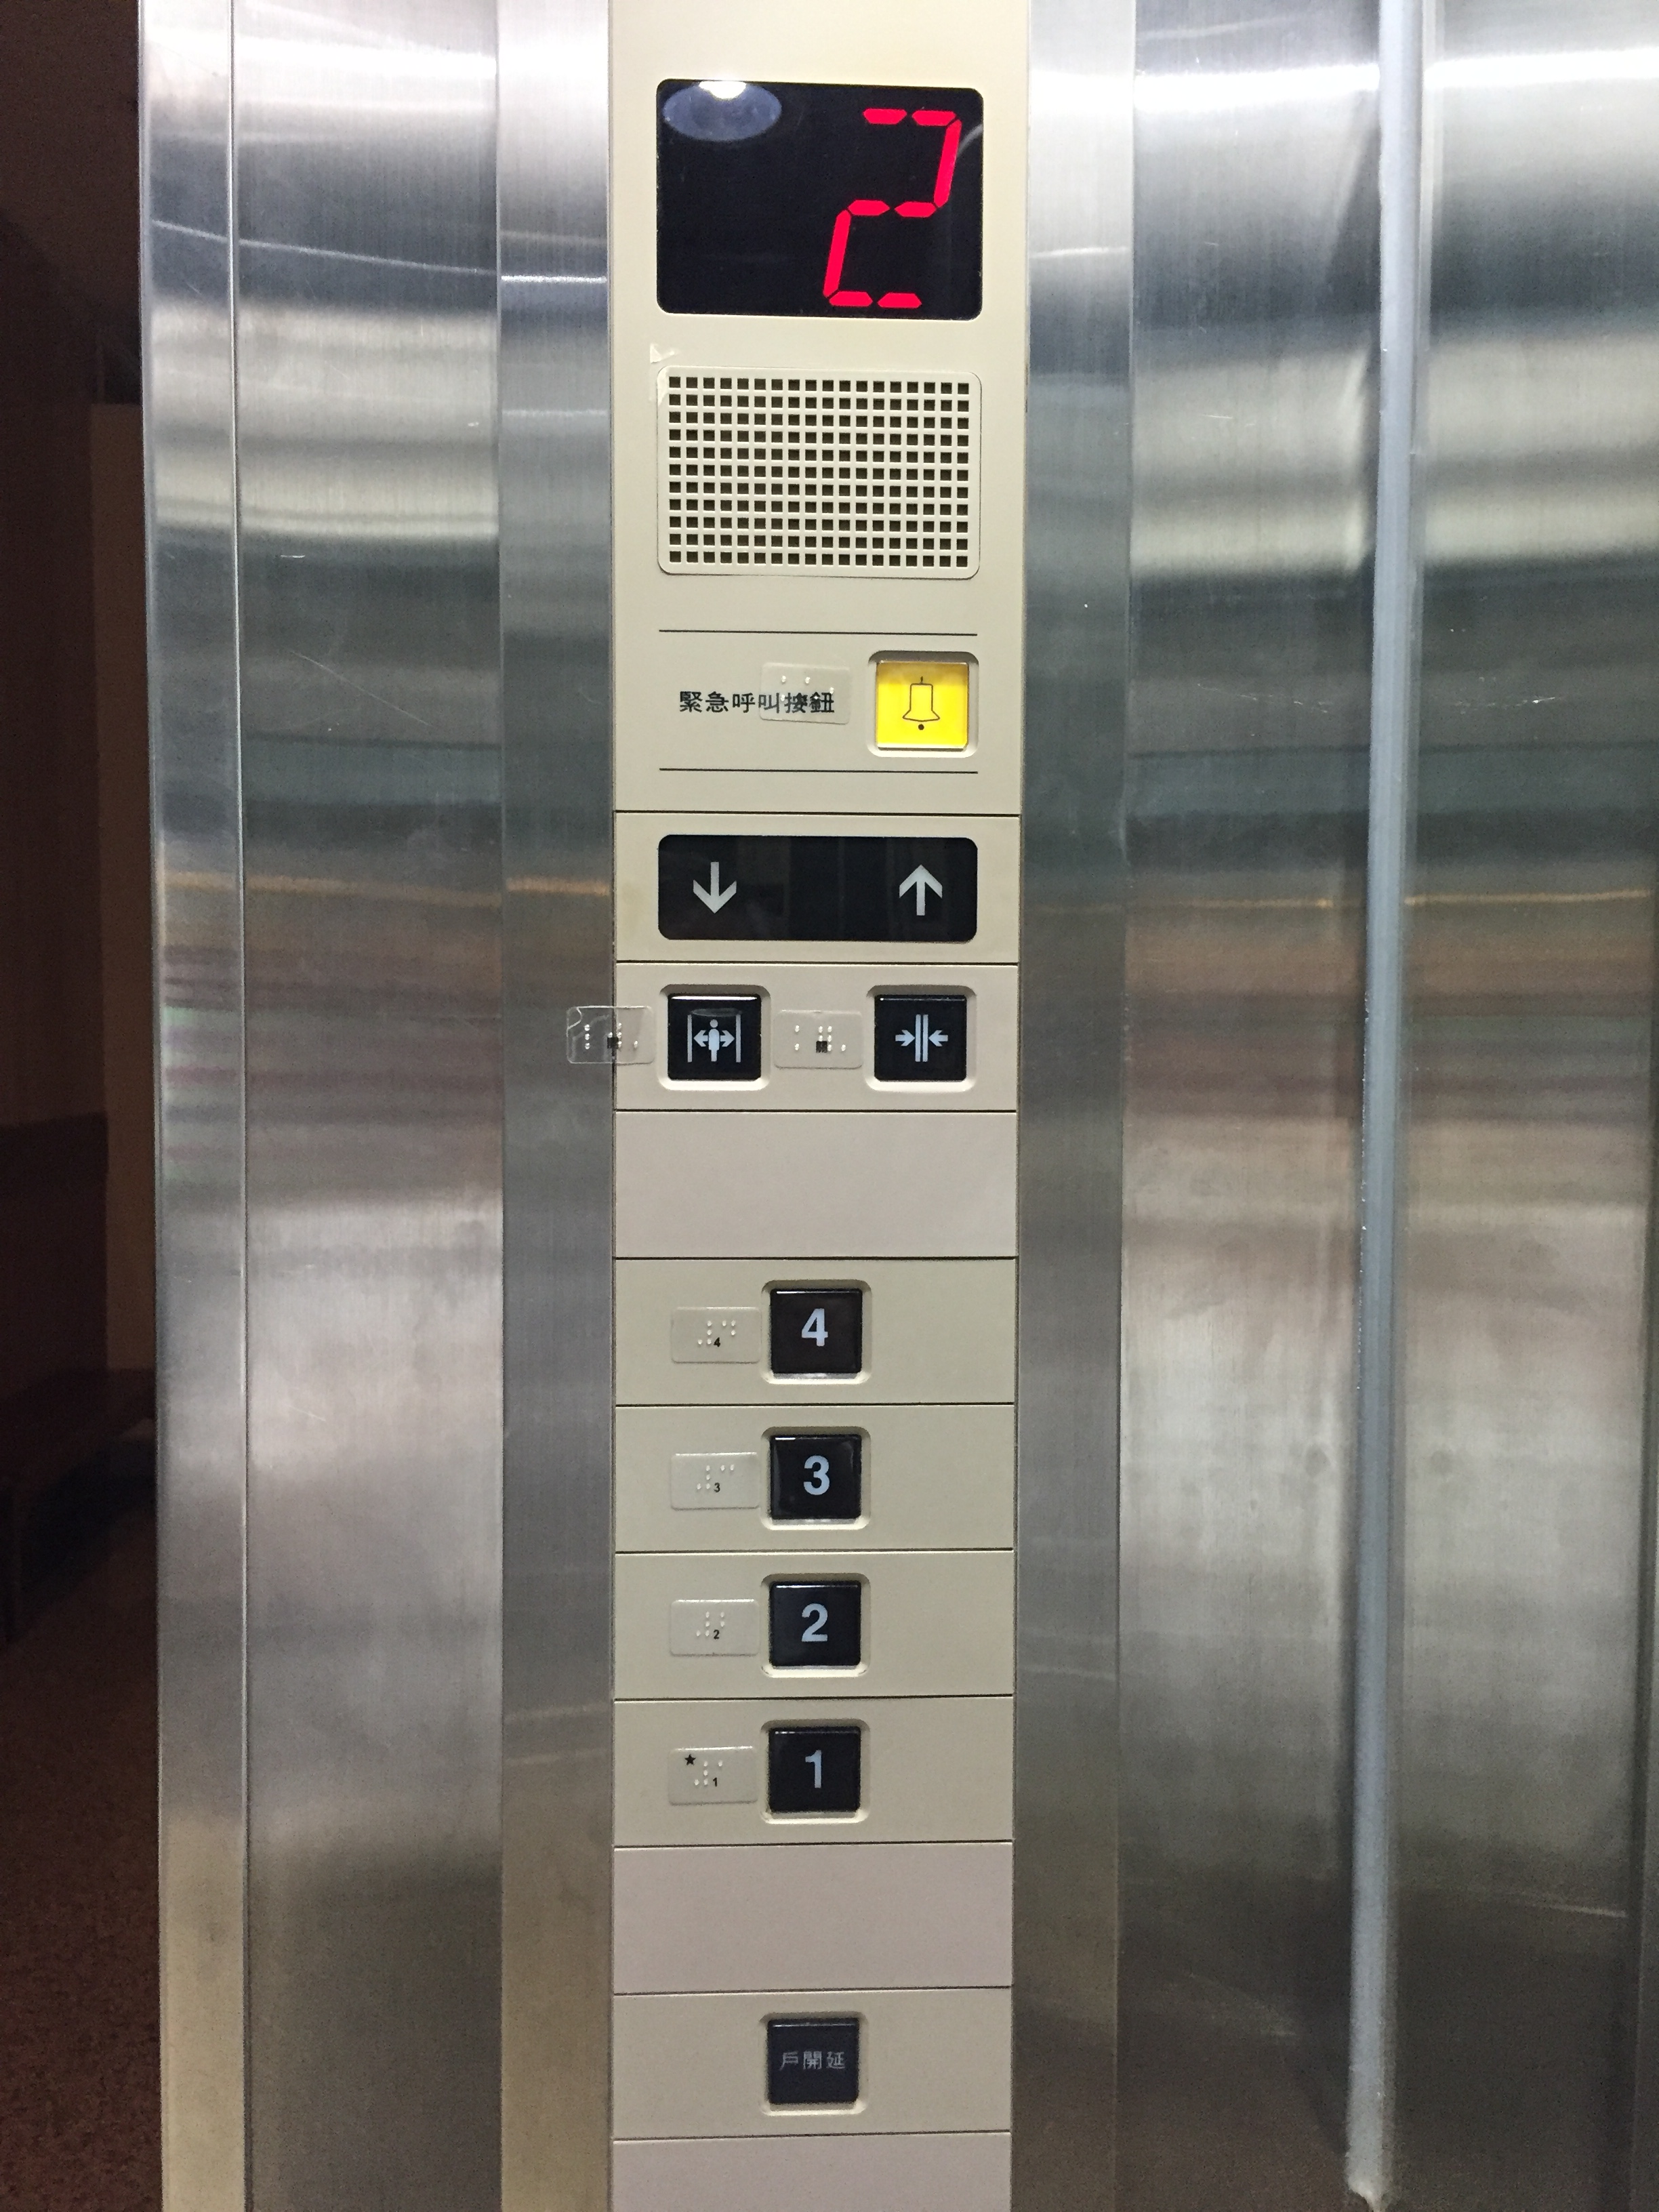 各樓層電梯間設有視障點字標示